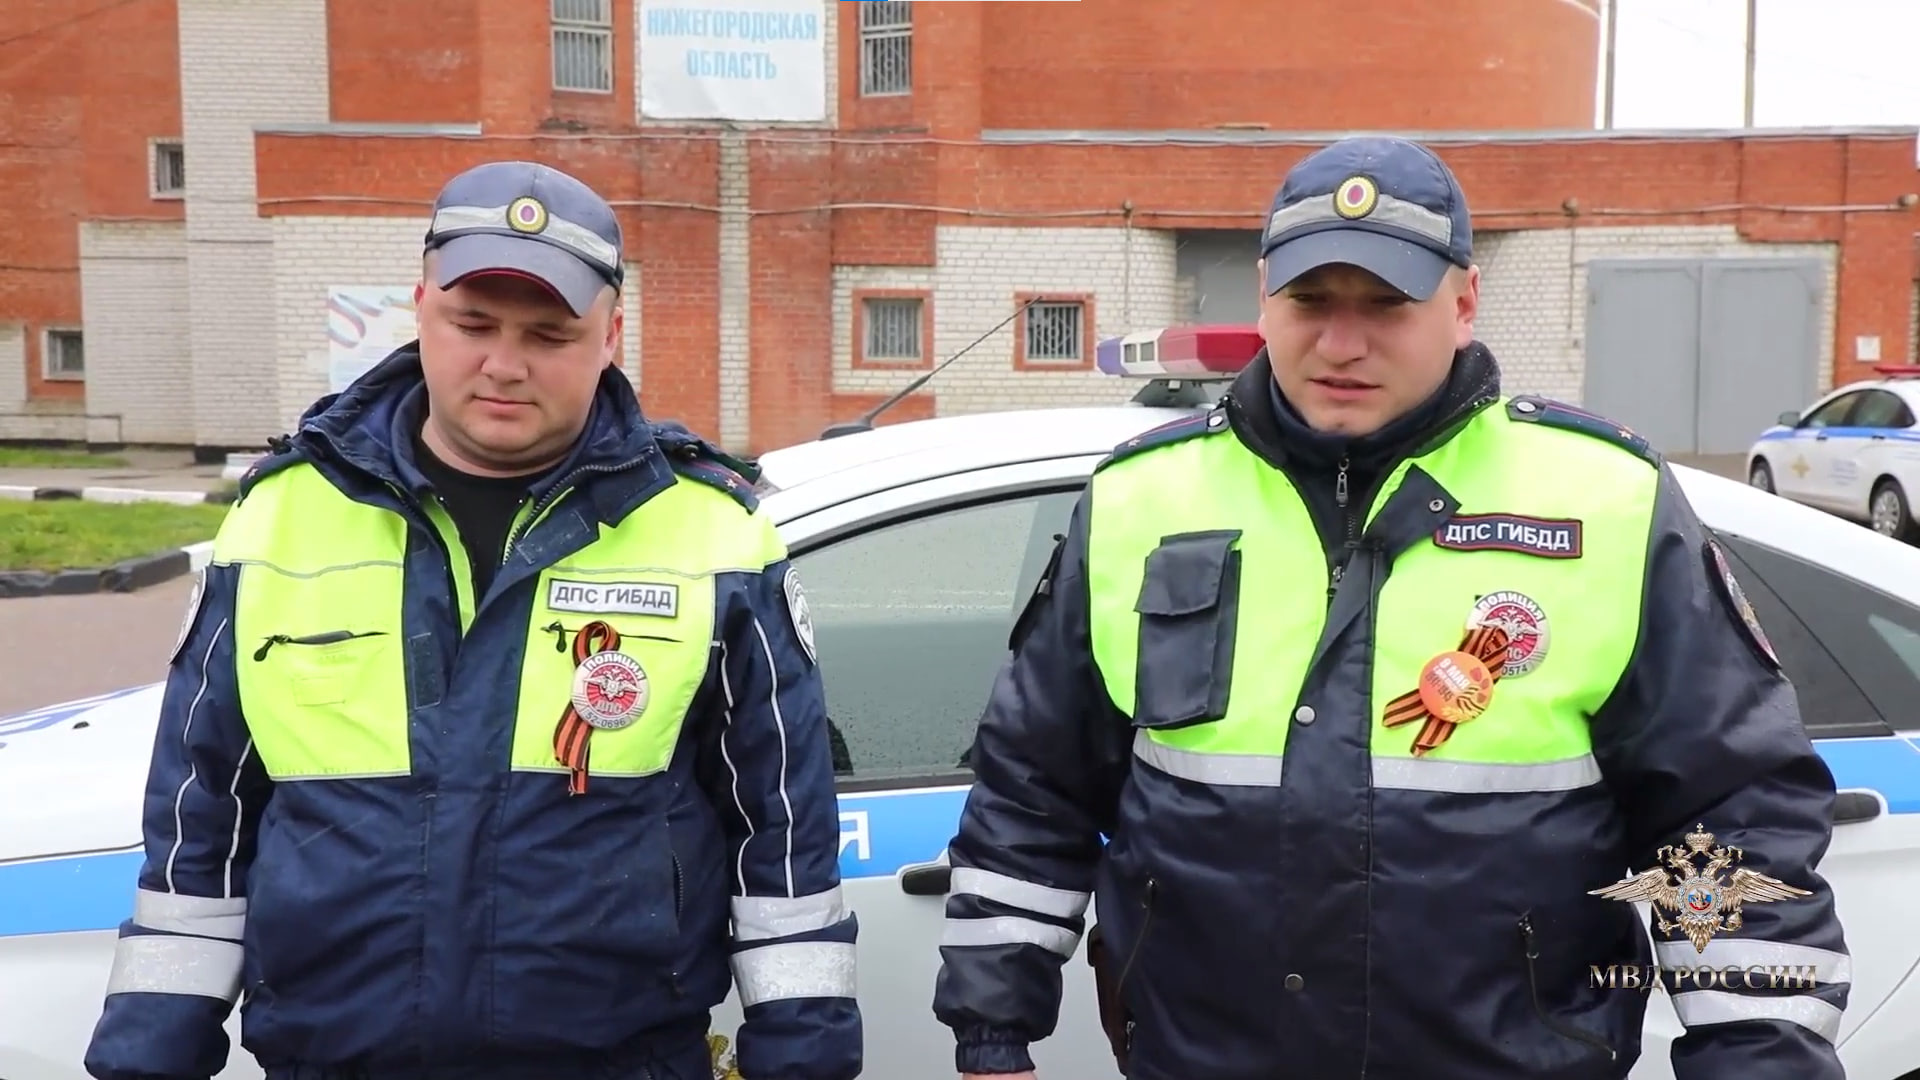 Достали с того света. В Нижегородской области полицейские спасли водителя от инсульта